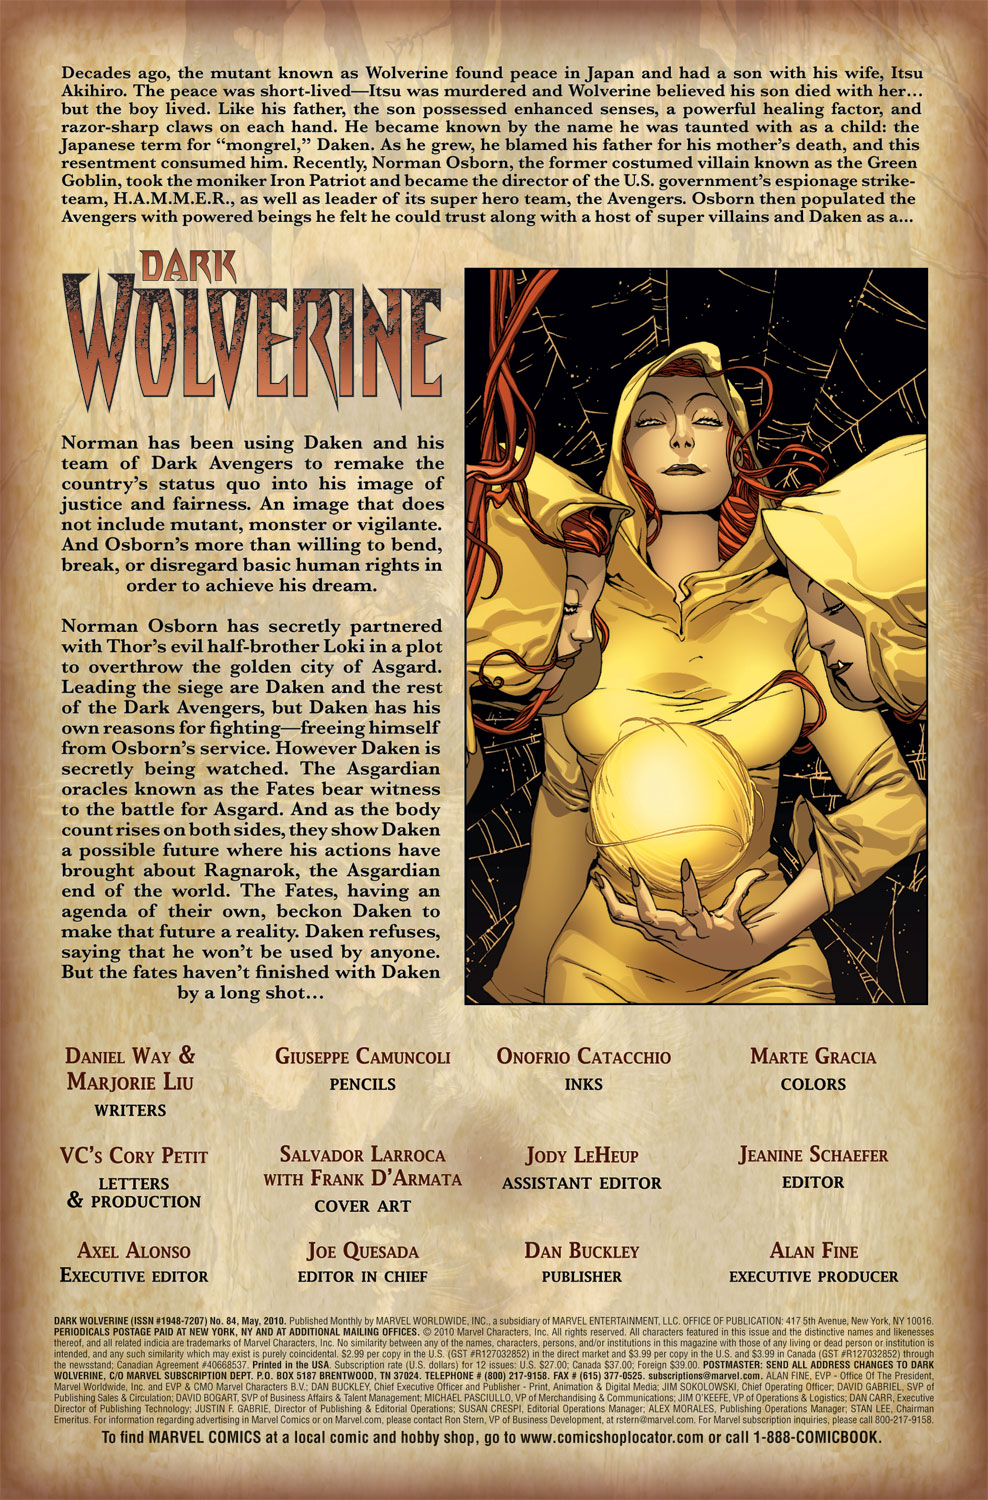 Dark Wolverine 84 Page 1